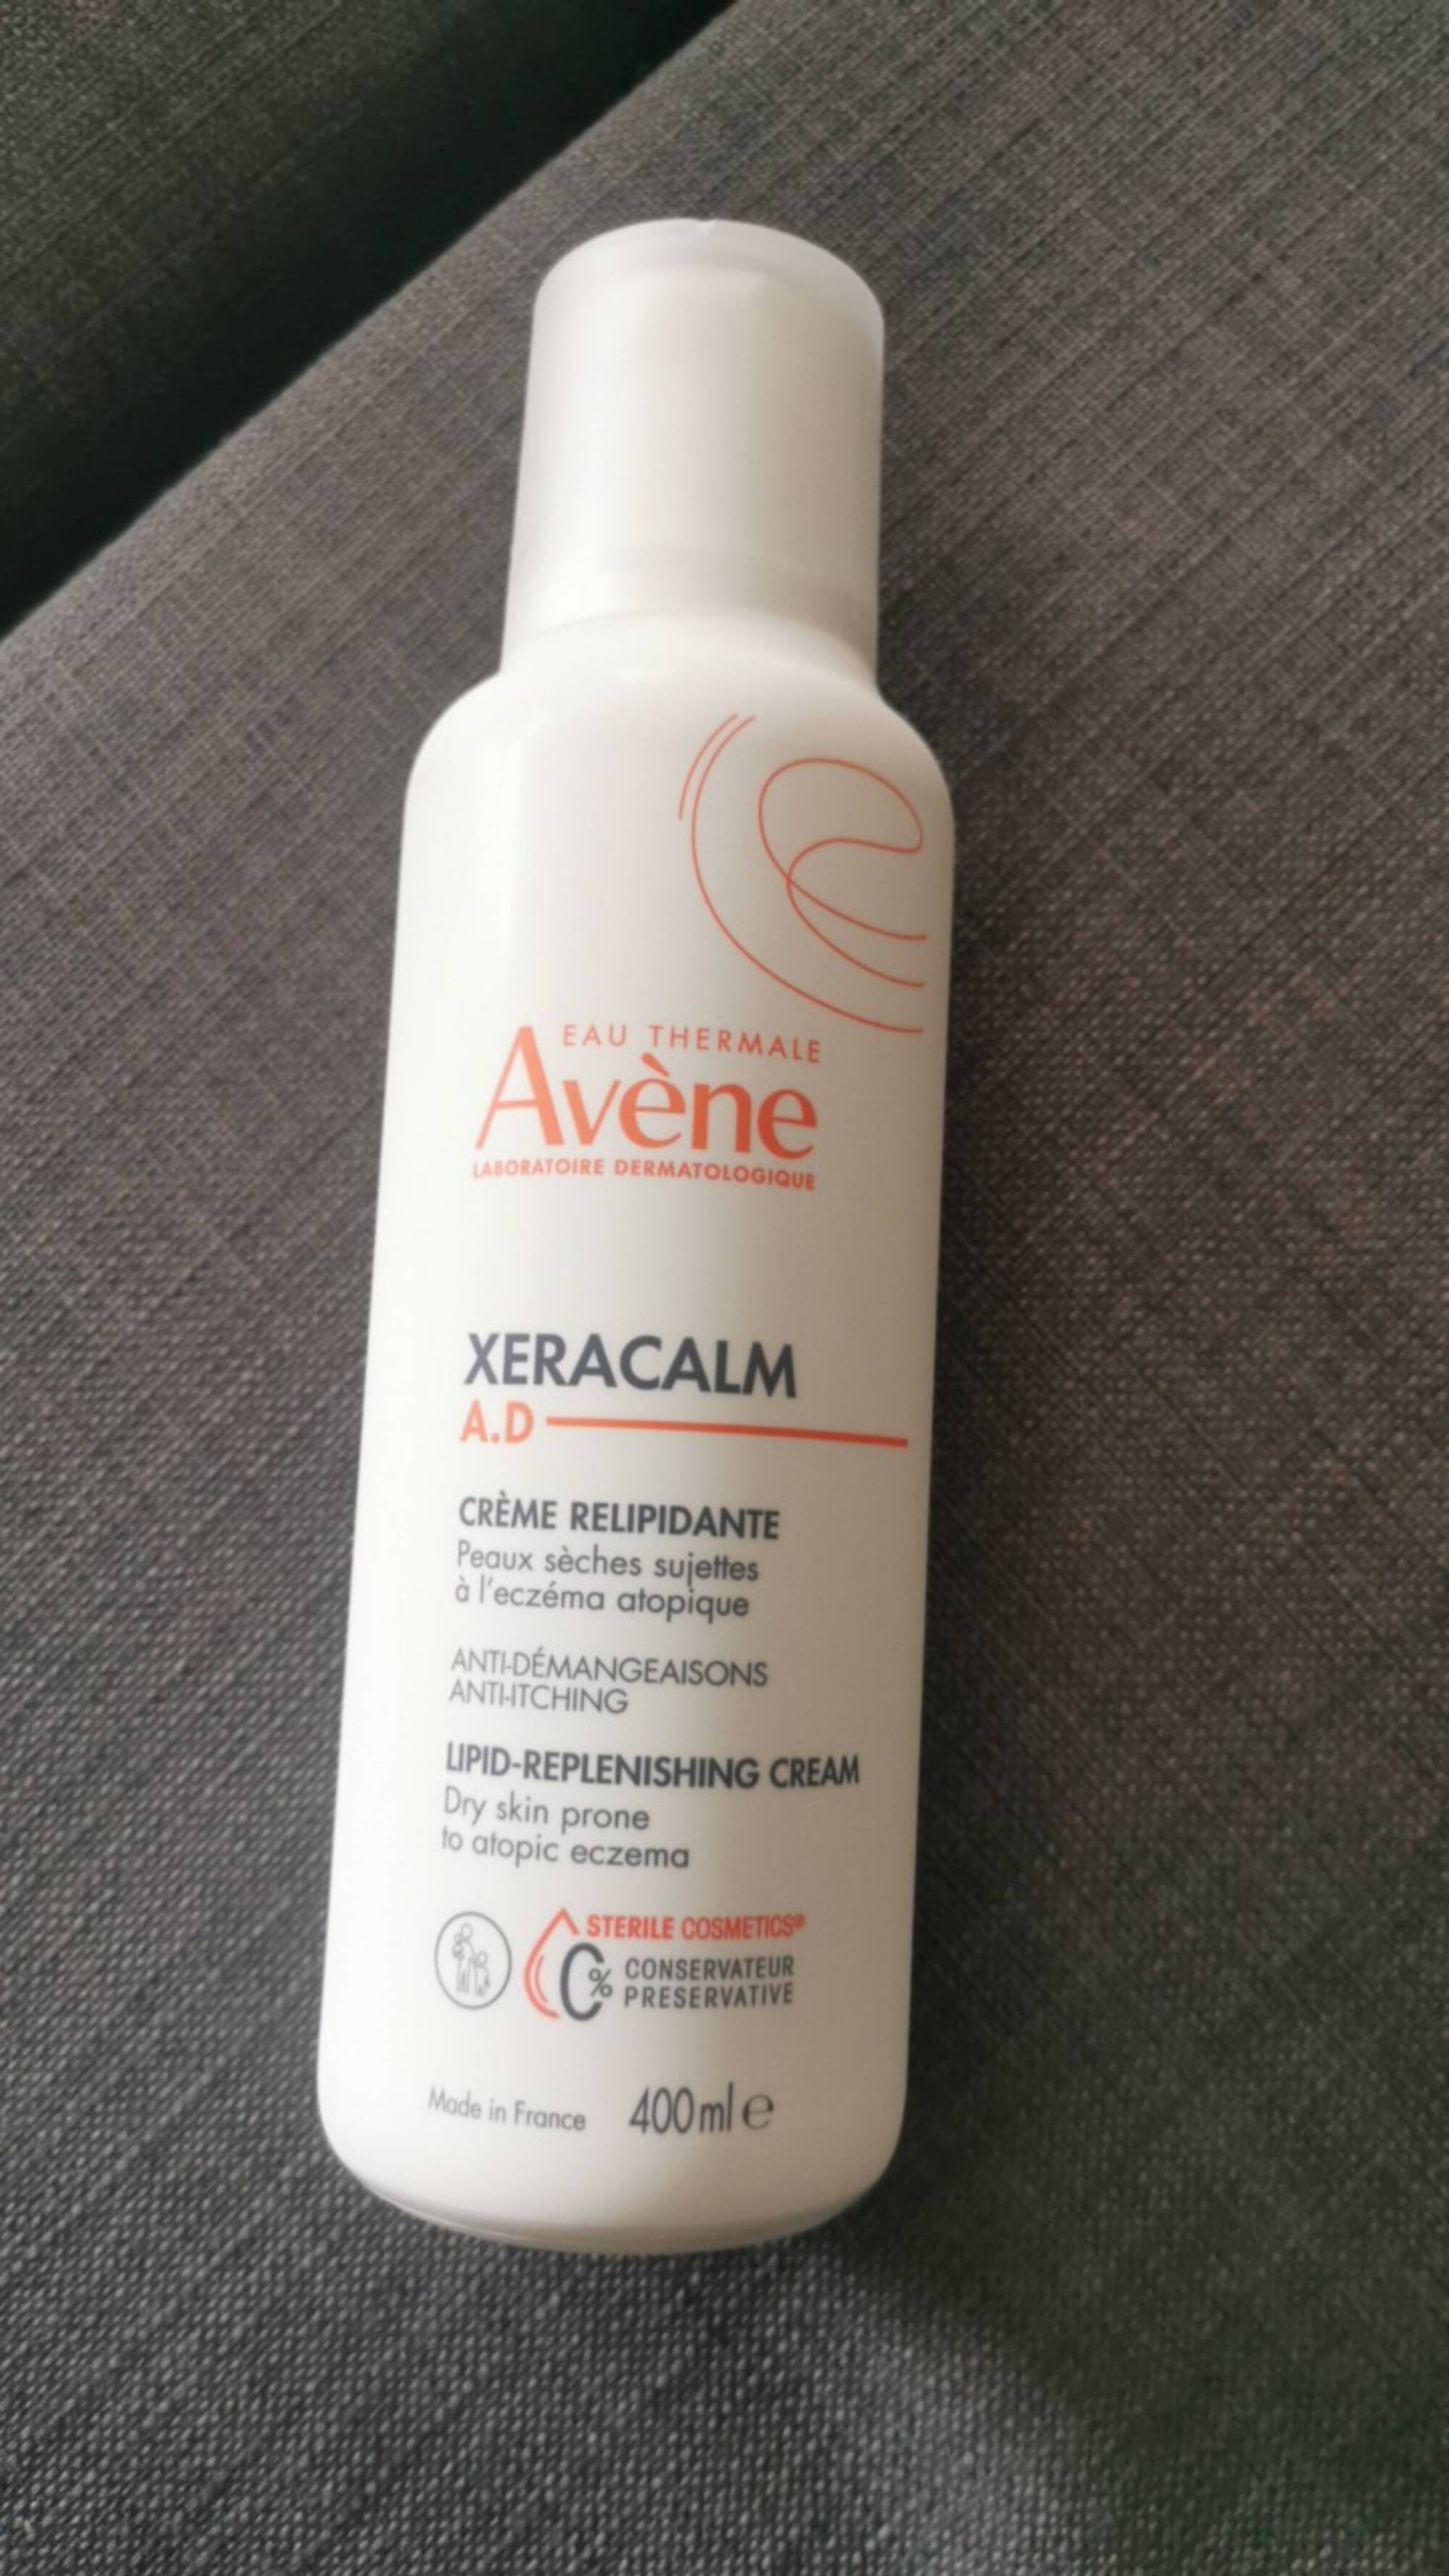 AVÈNE - Xeracalm AD - Crème relipidante